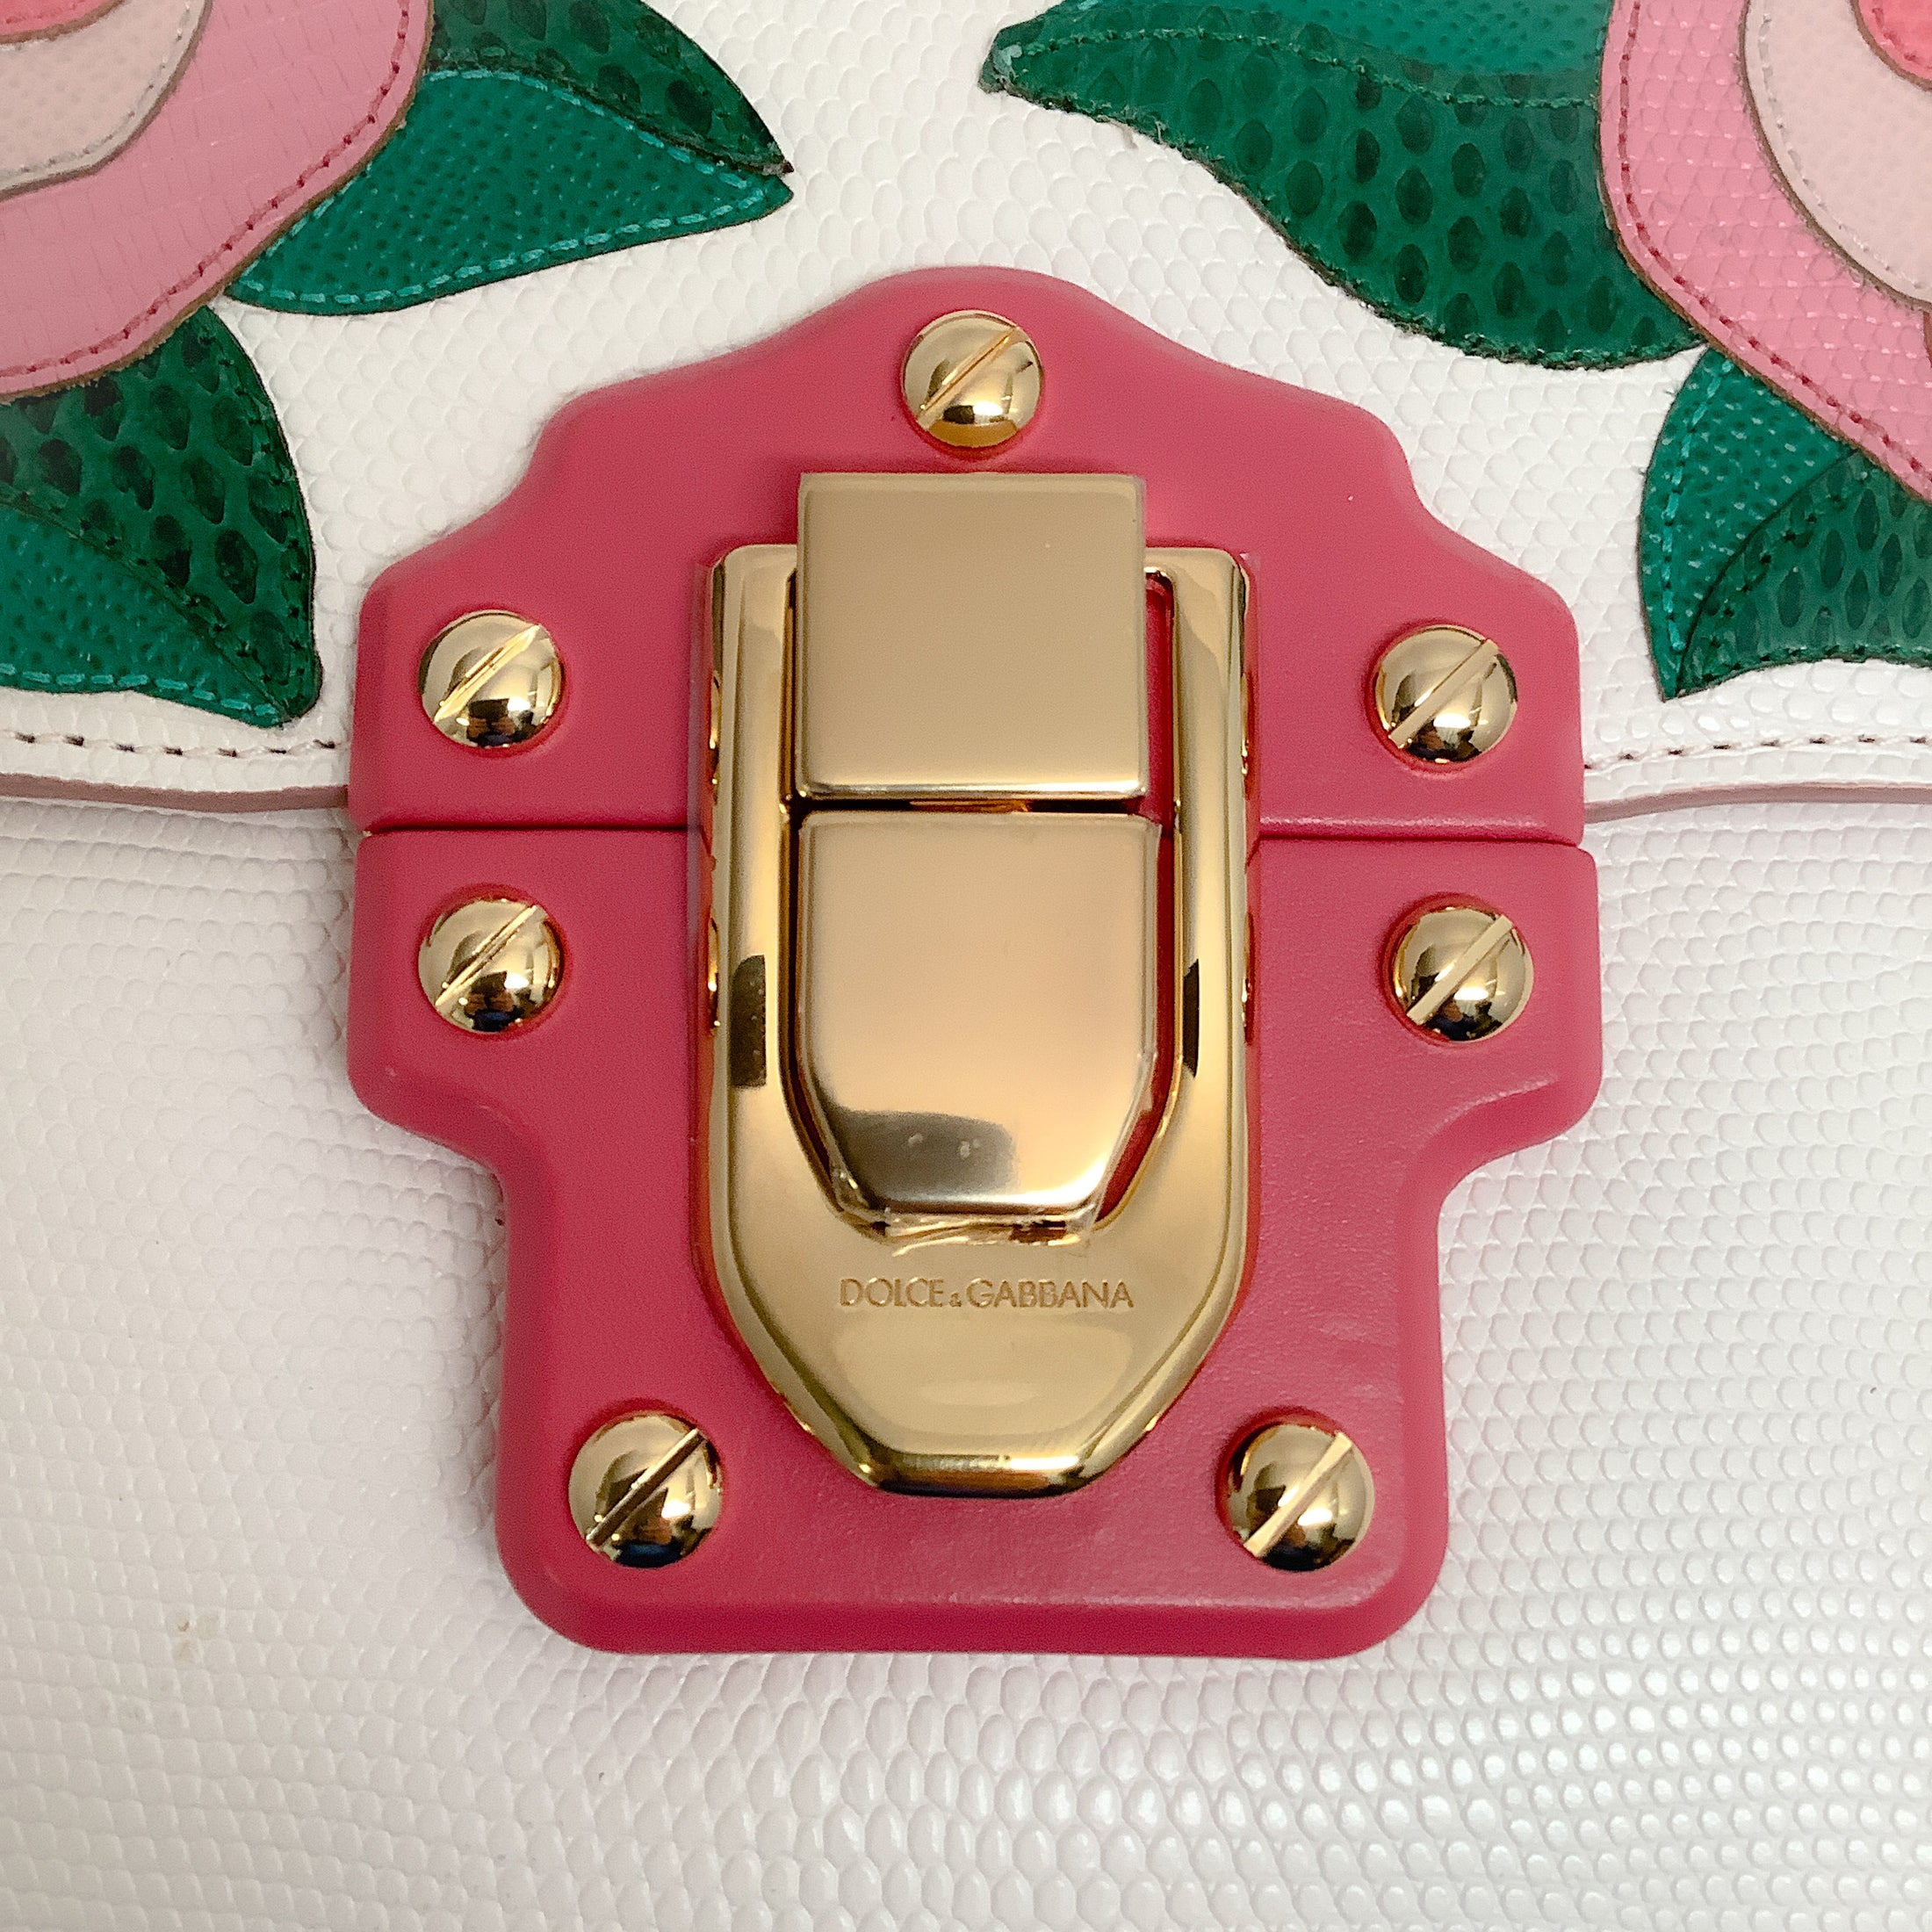 Dolce & Gabbana Pink Roses Lucia Ivory Lizard Skin Leather Shoulder Bag